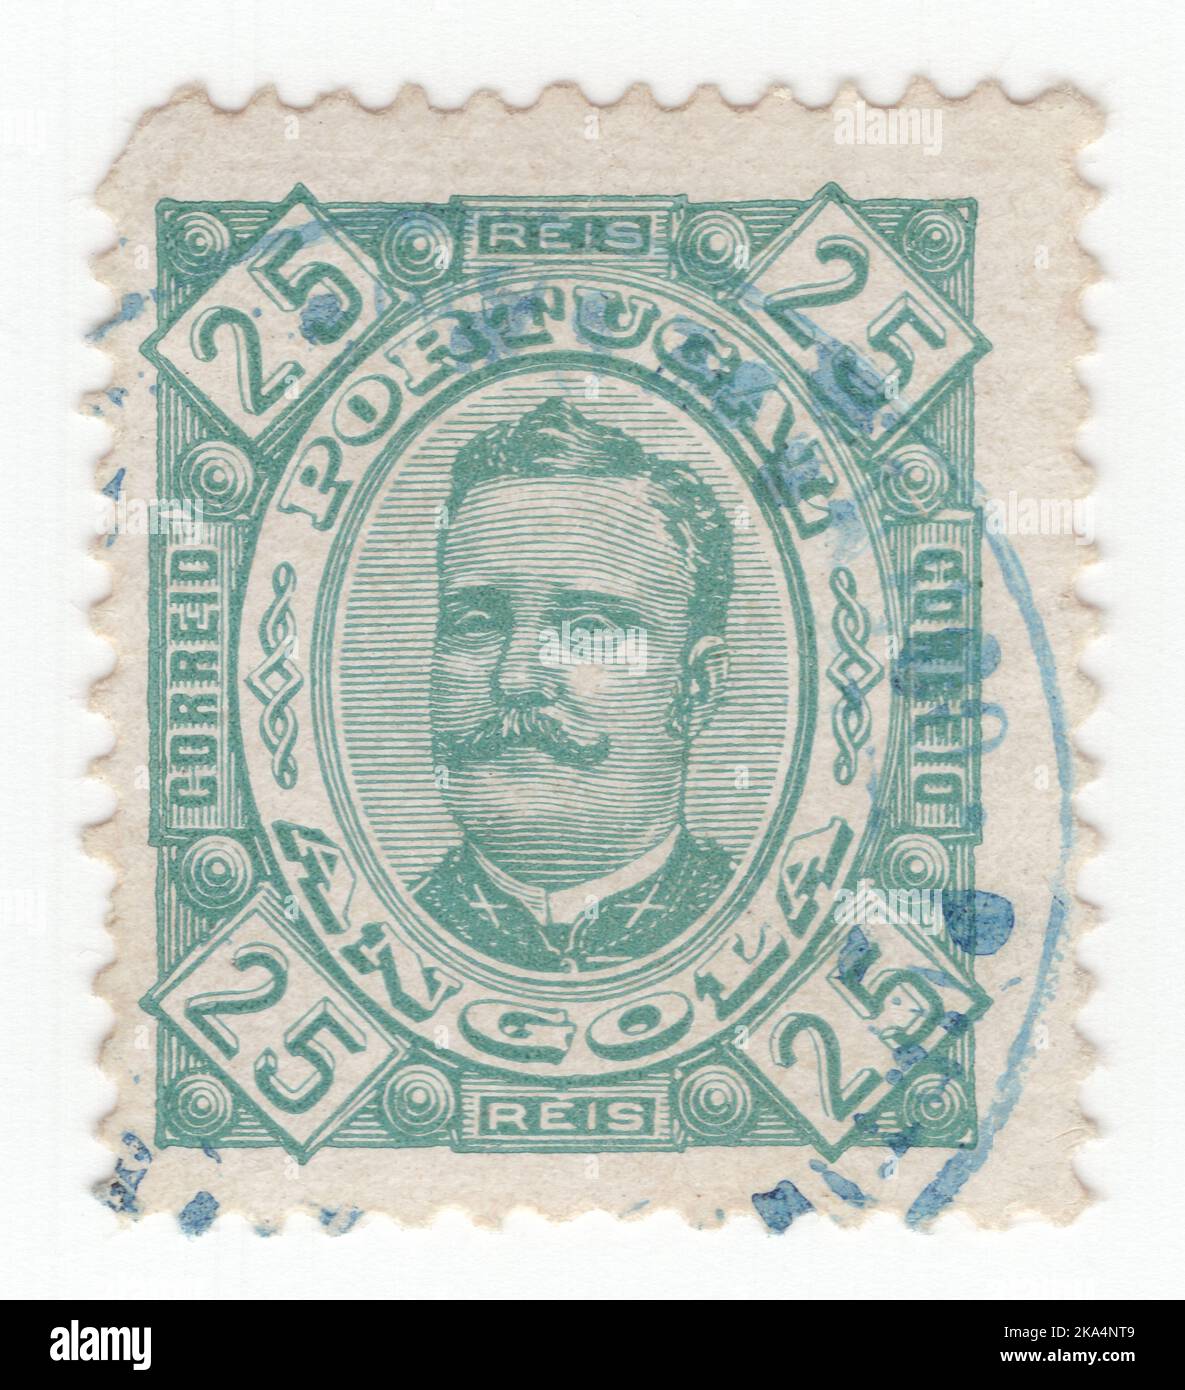 ANGOLA - UM 1893: Eine grüne Briefmarke von 25 reis, die das Porträt von Dom Carlos I. zeigt, bekannt als Diplomat, Märtyrer und Ozeanograph, König von Portugal Stockfoto